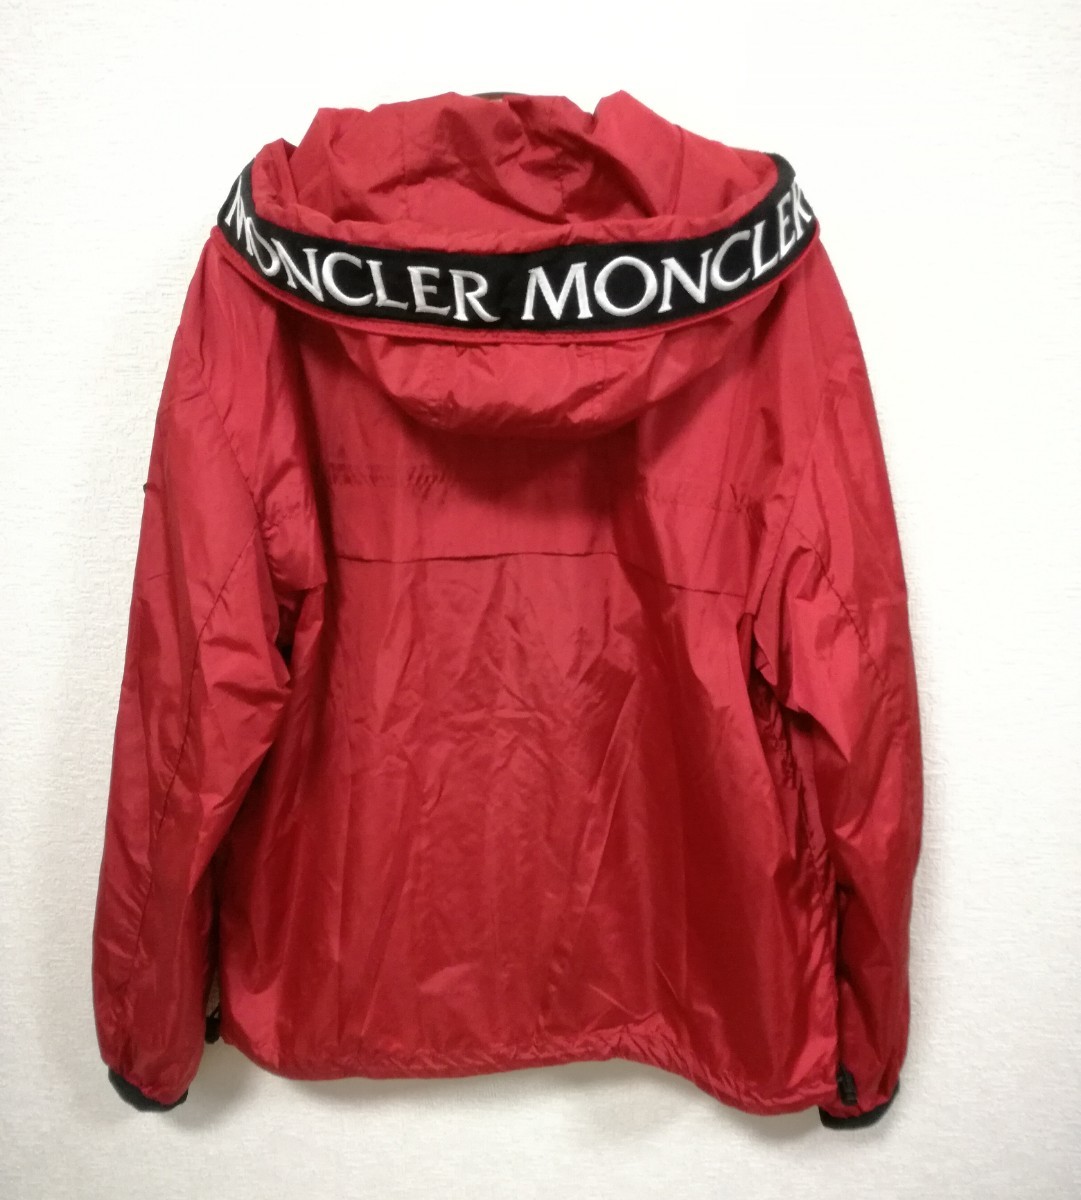 MONCLER モンクレール マセロー MASSEREAU ジャケット ワッペン レッド ブルゾン パーカー 赤 国内正規品